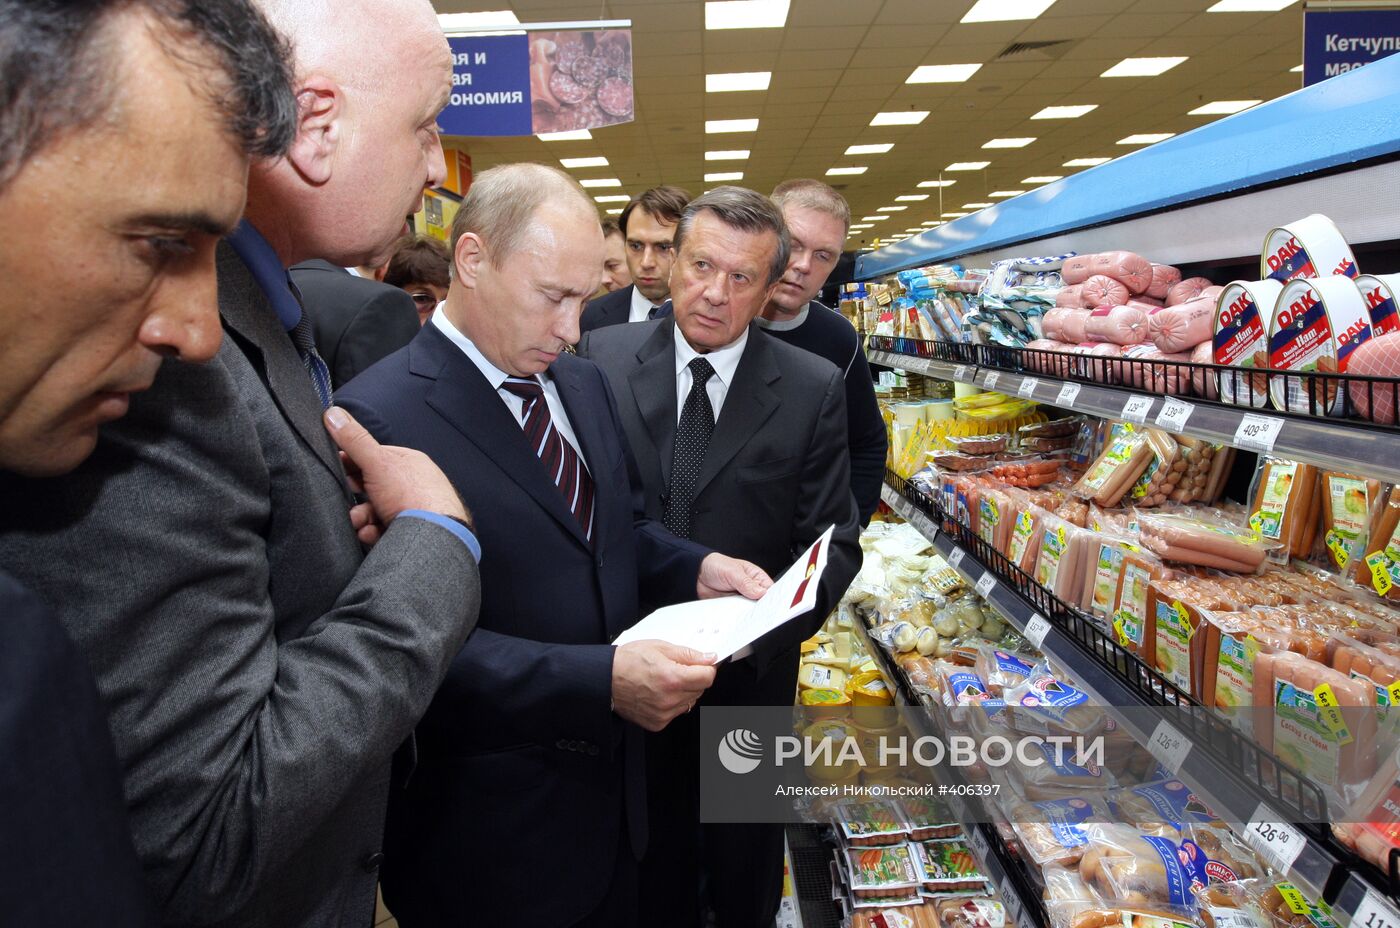 Владимир Путин посетил супермаркет "Перекресток" в Москве